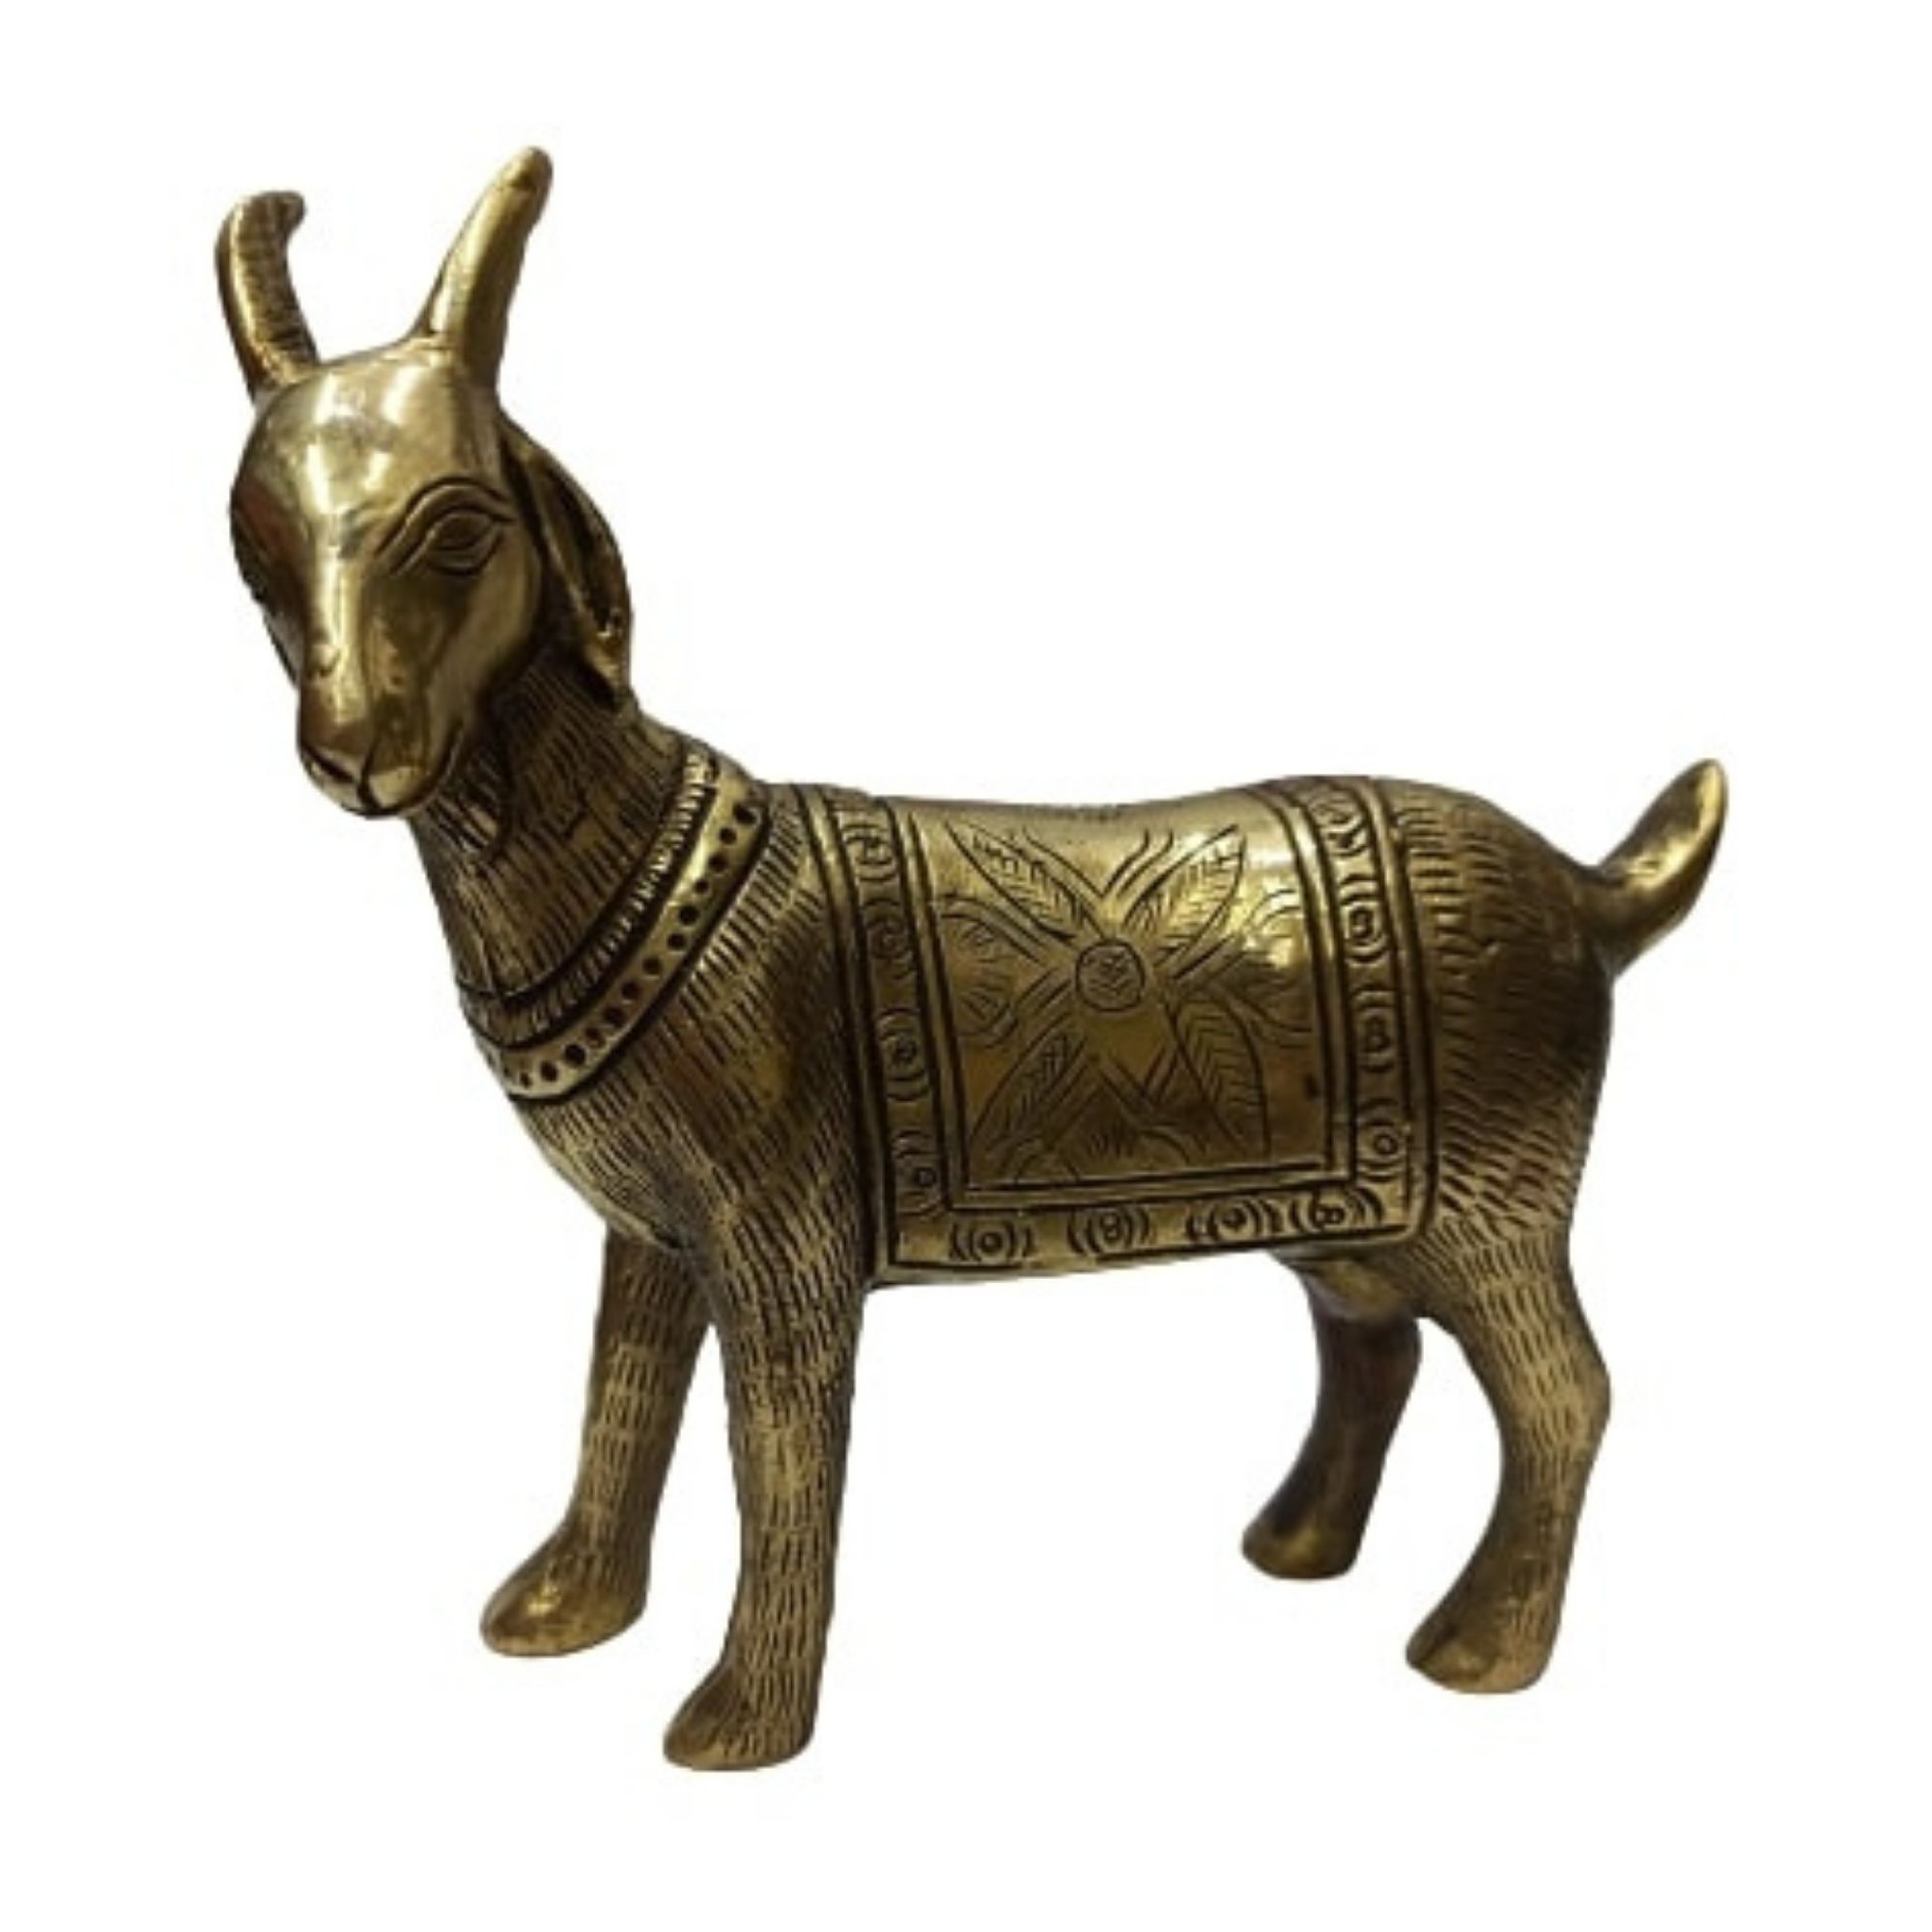 Shop Vintage Brass Animal Figurine online